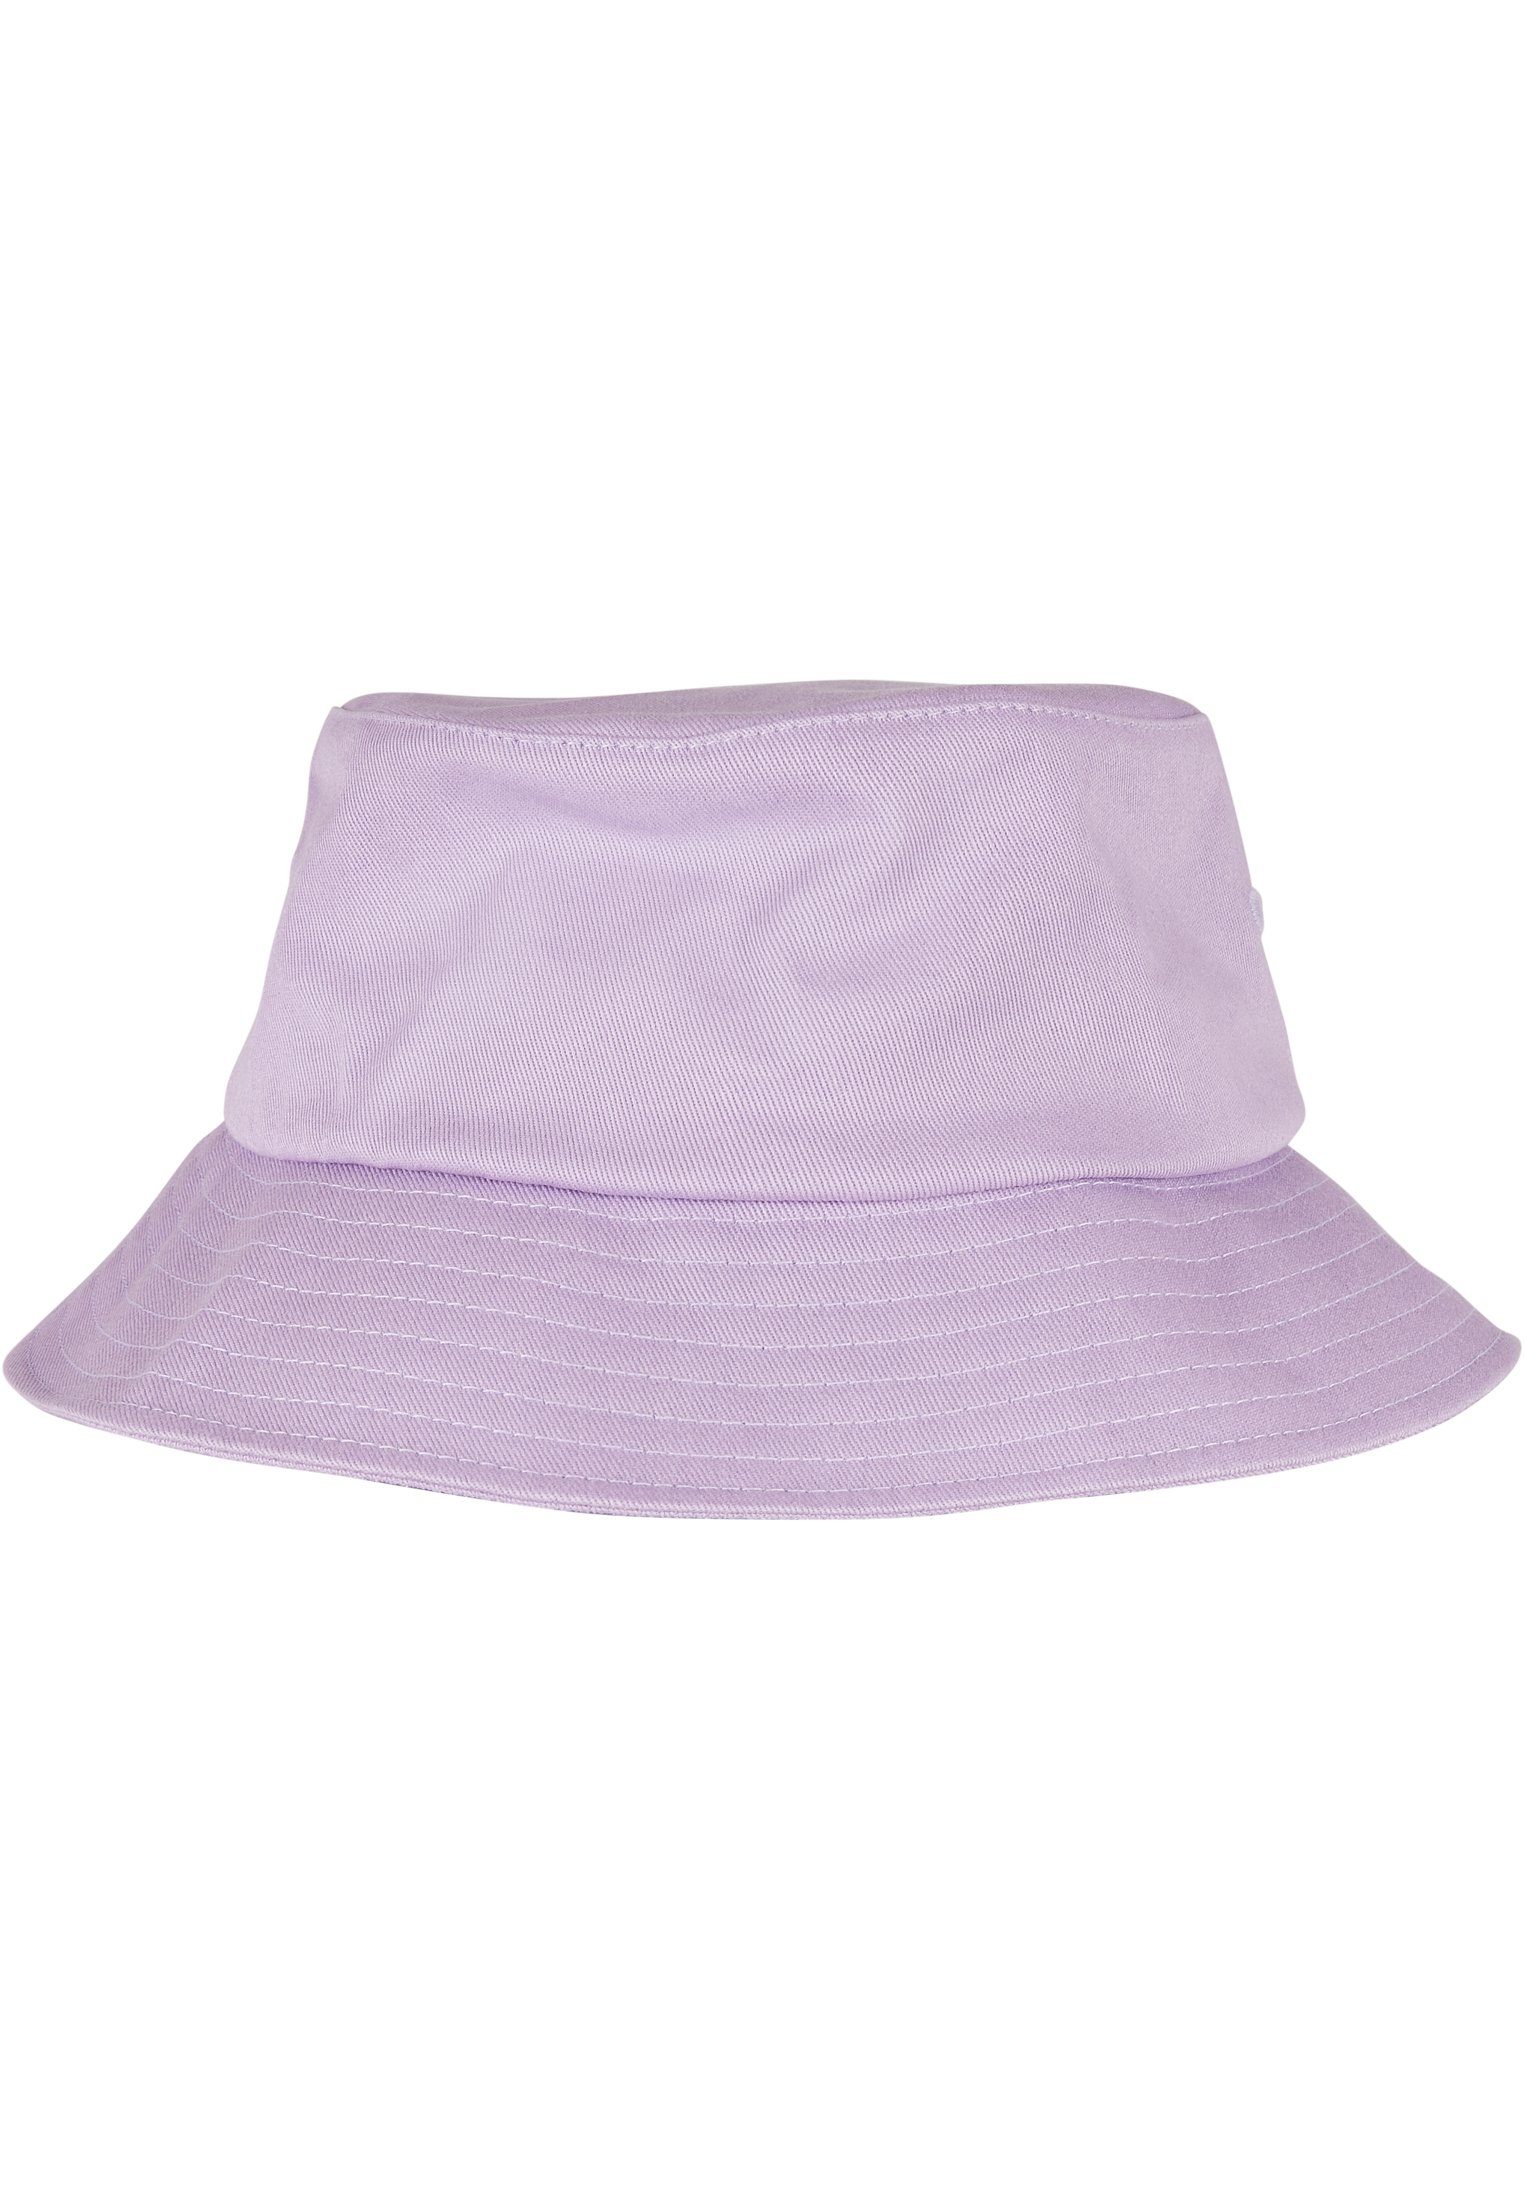 Flexfit Flex Cap Accessoires Flexfit Bucket Hat Cotton lilac Twill